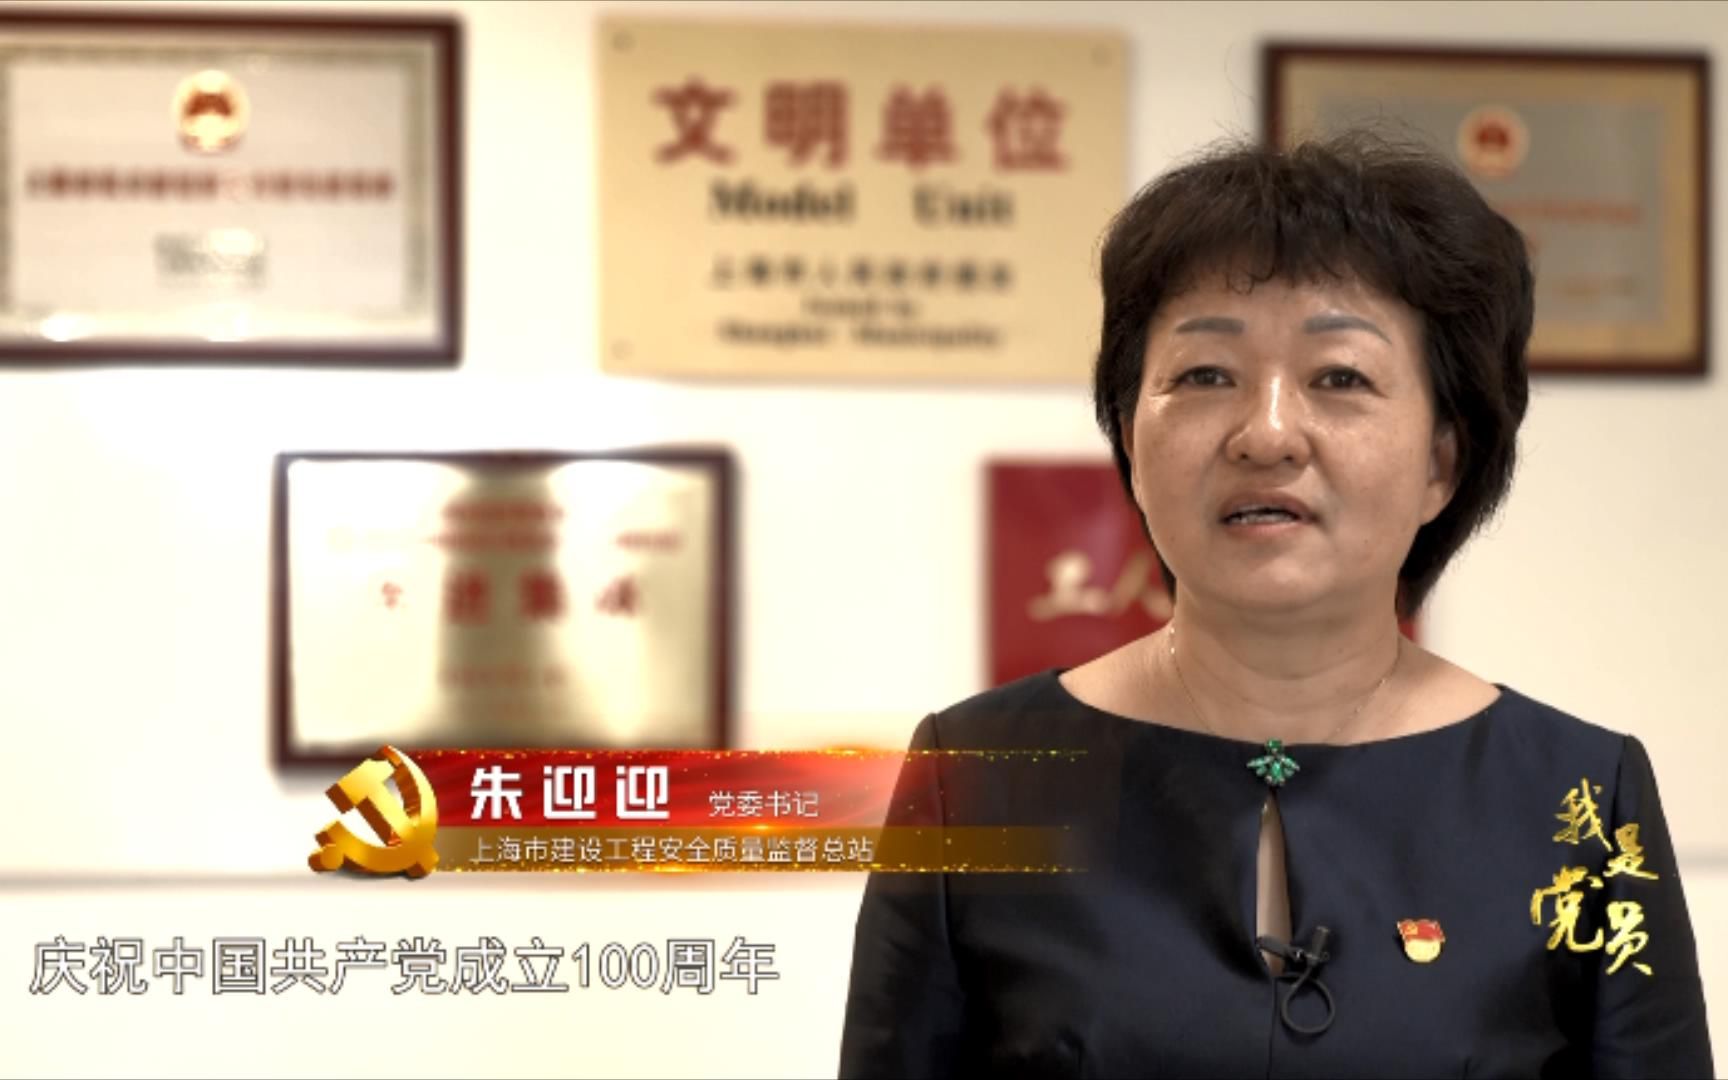 《我是党员-朱迎迎》她是一位党委书记，带领团队为上海建设工程保驾护航。她又是一位花艺专家，带领选手蝉联两届世界技能大赛花艺项目冠军。